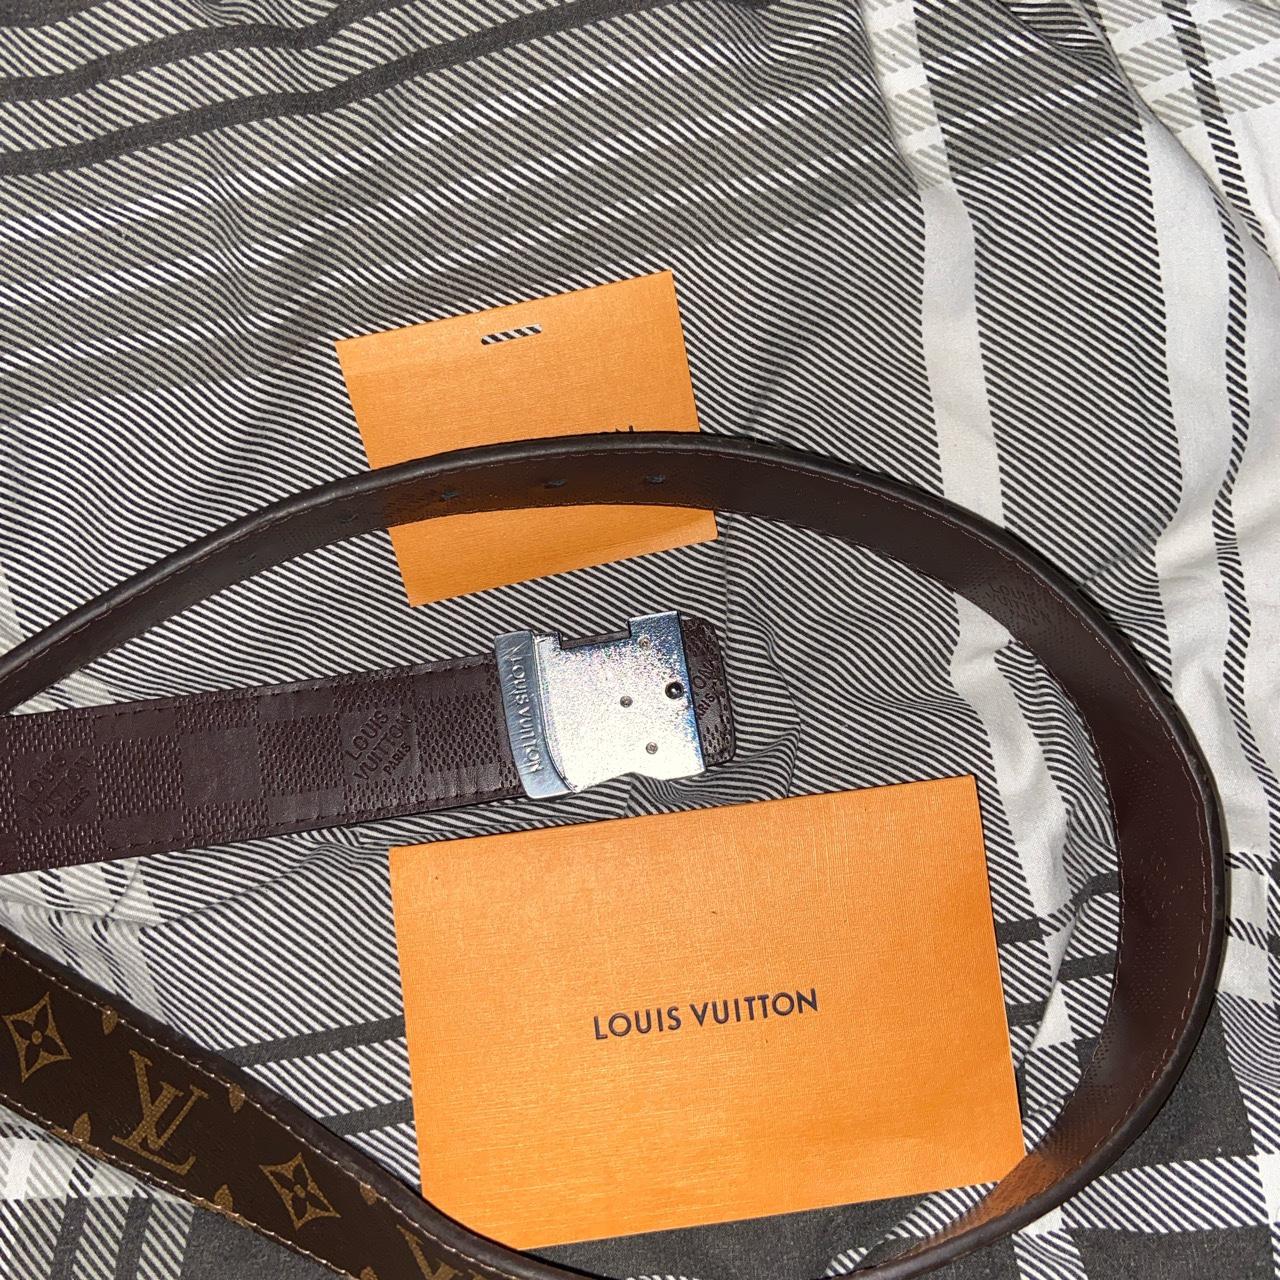 Authentic Louis vuttion belt unfortunately, it - Depop